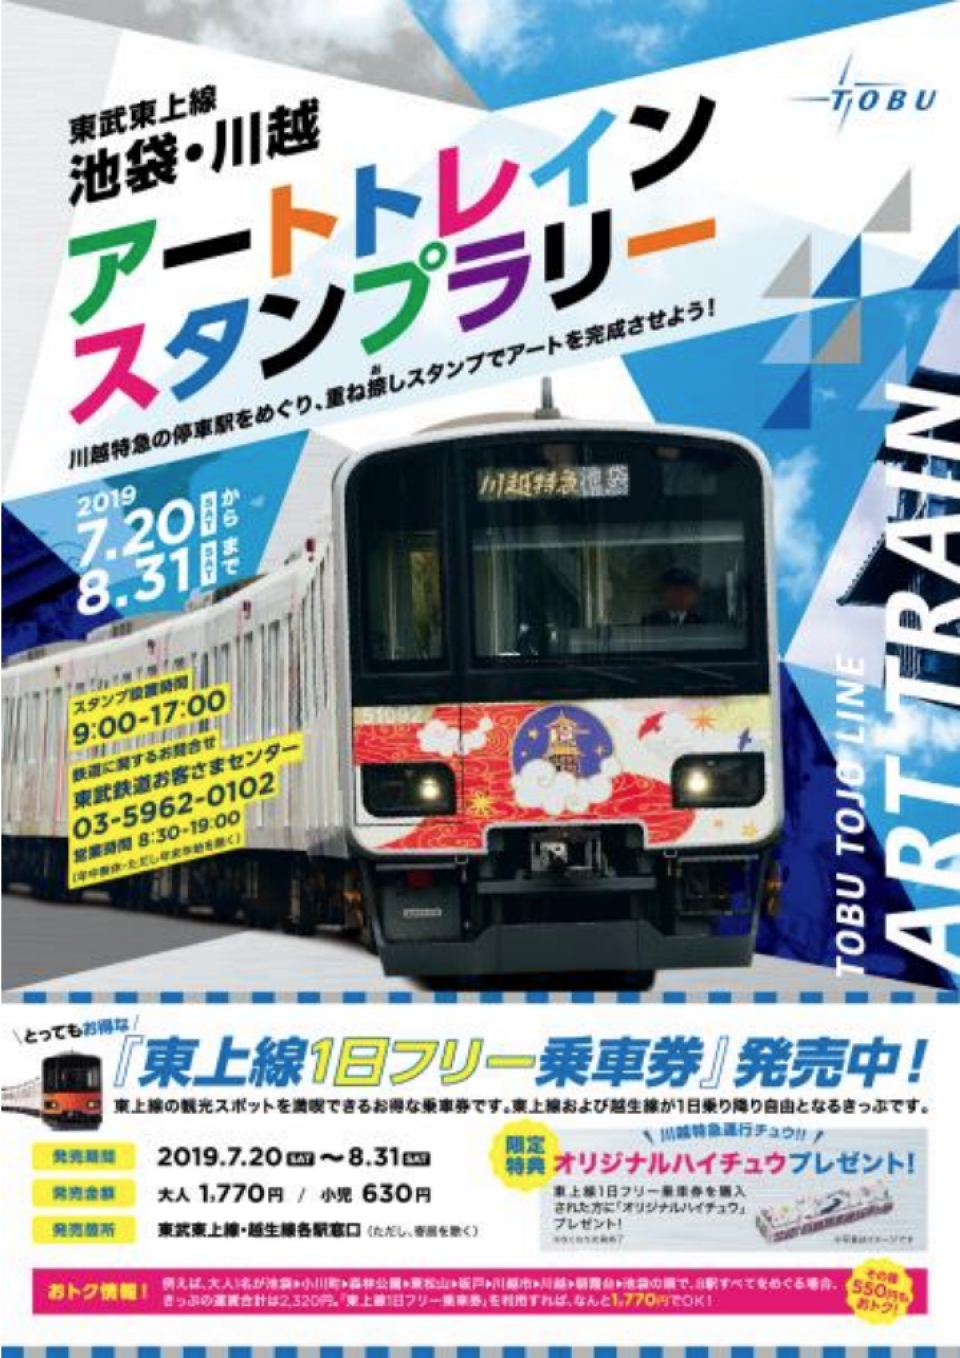 東武鉄道 東上線 スタンプラリー ニュース・話題 | レイルラボ(RailLab)